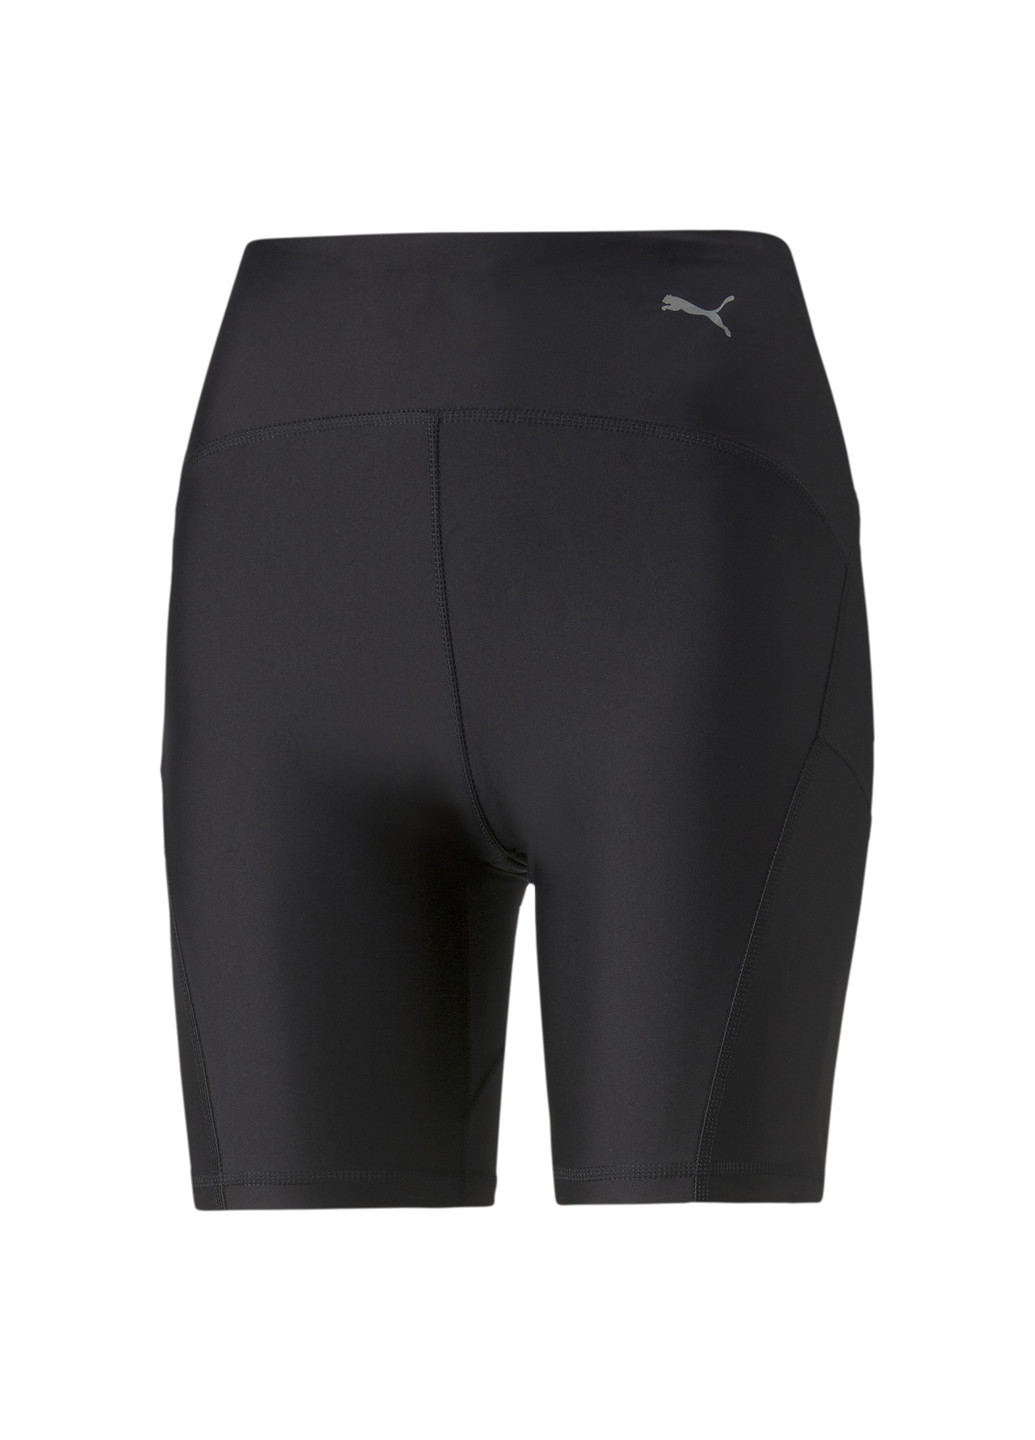 Черные демисезонные шорты ultraform tight running shorts women Puma